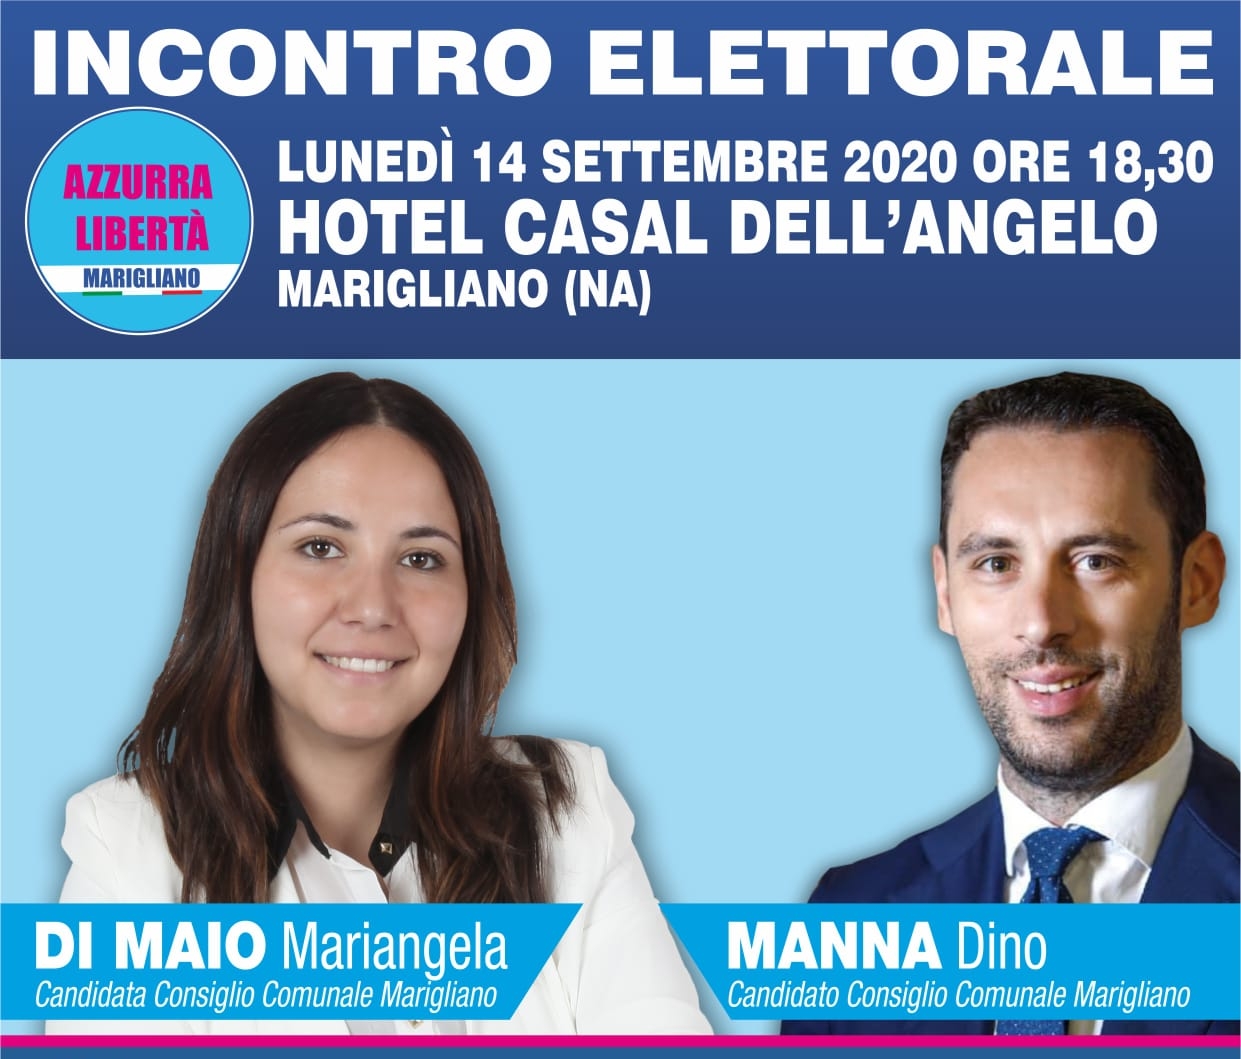 Marigliano, lunedì 14 settembre, incontro elettorale con Di Maio e Manna all'Hotel Casal dell'Angelo